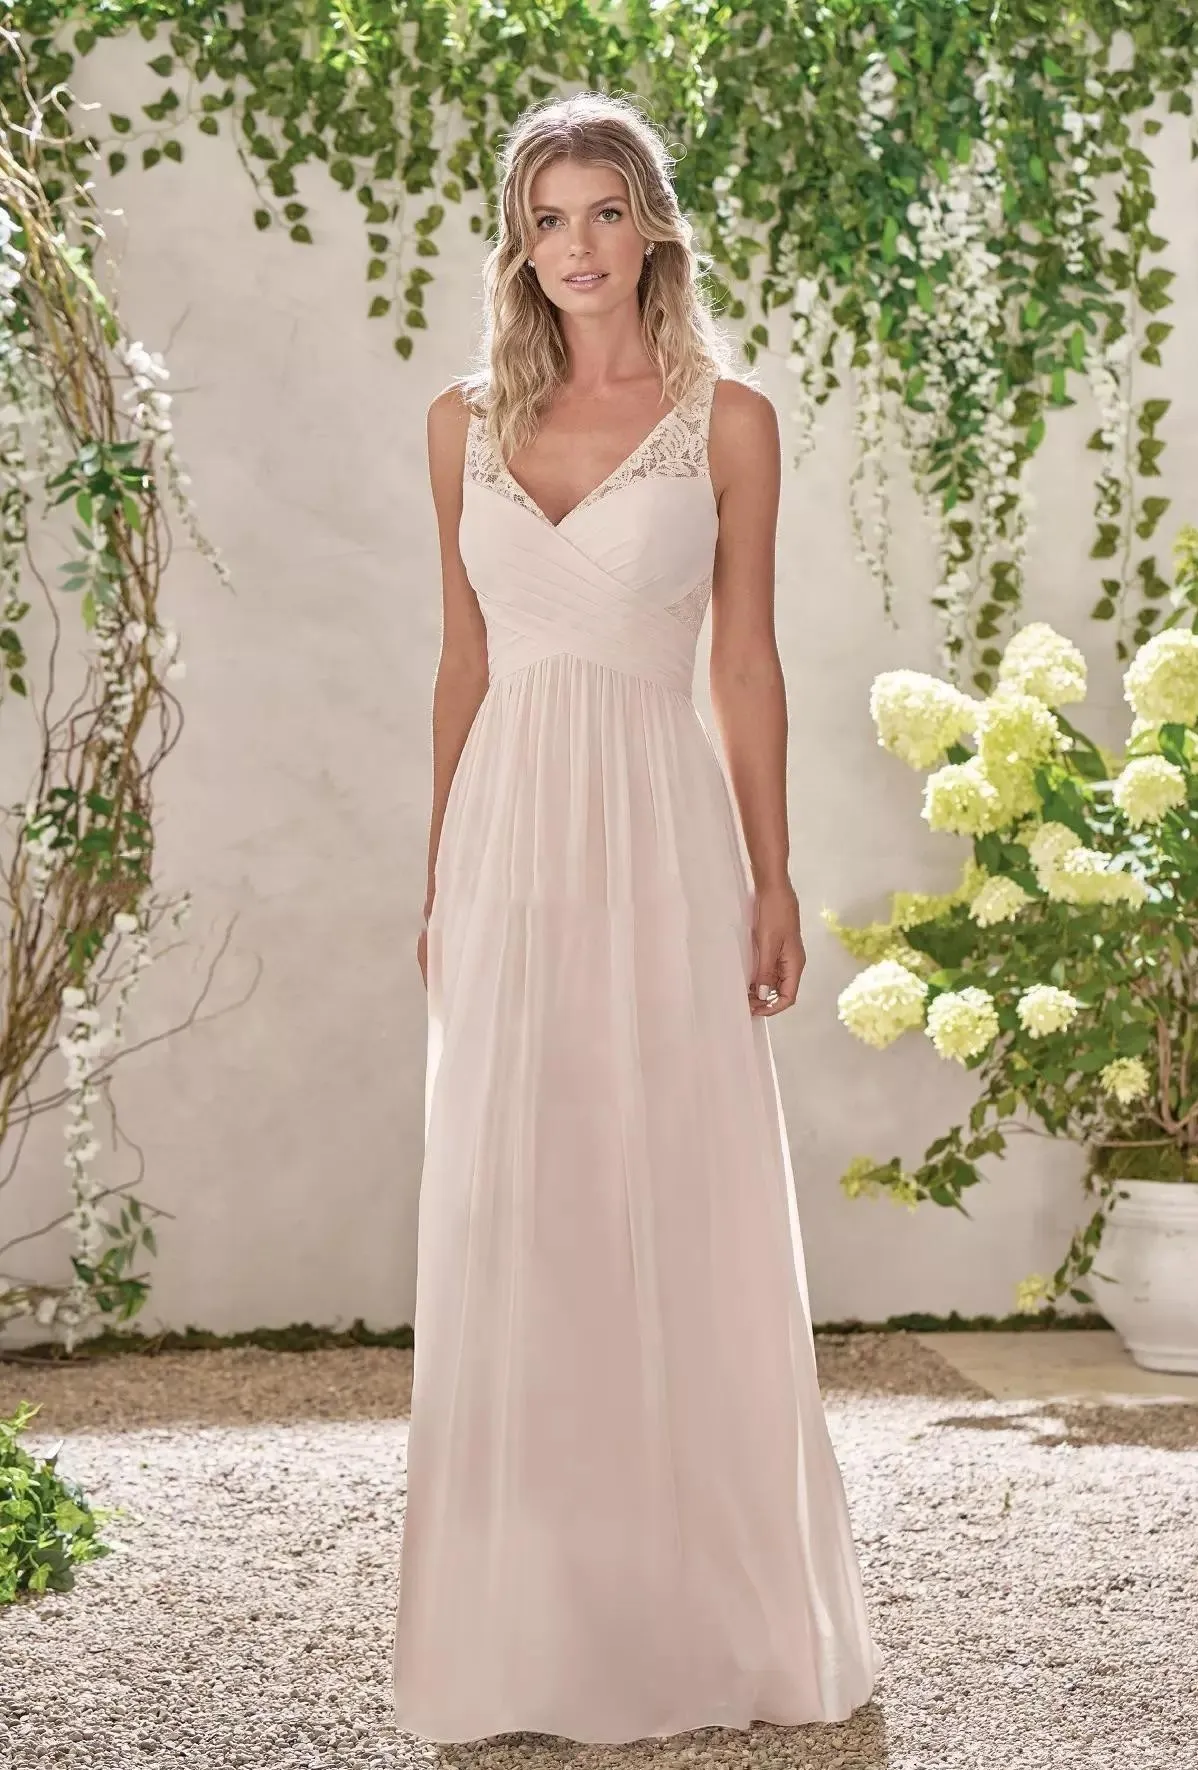 Tanie koronkowe szyfonowe sukienki druhny v szyja linijka długa pokojówka suknie honorowe wiejskie sukienki gości weselne